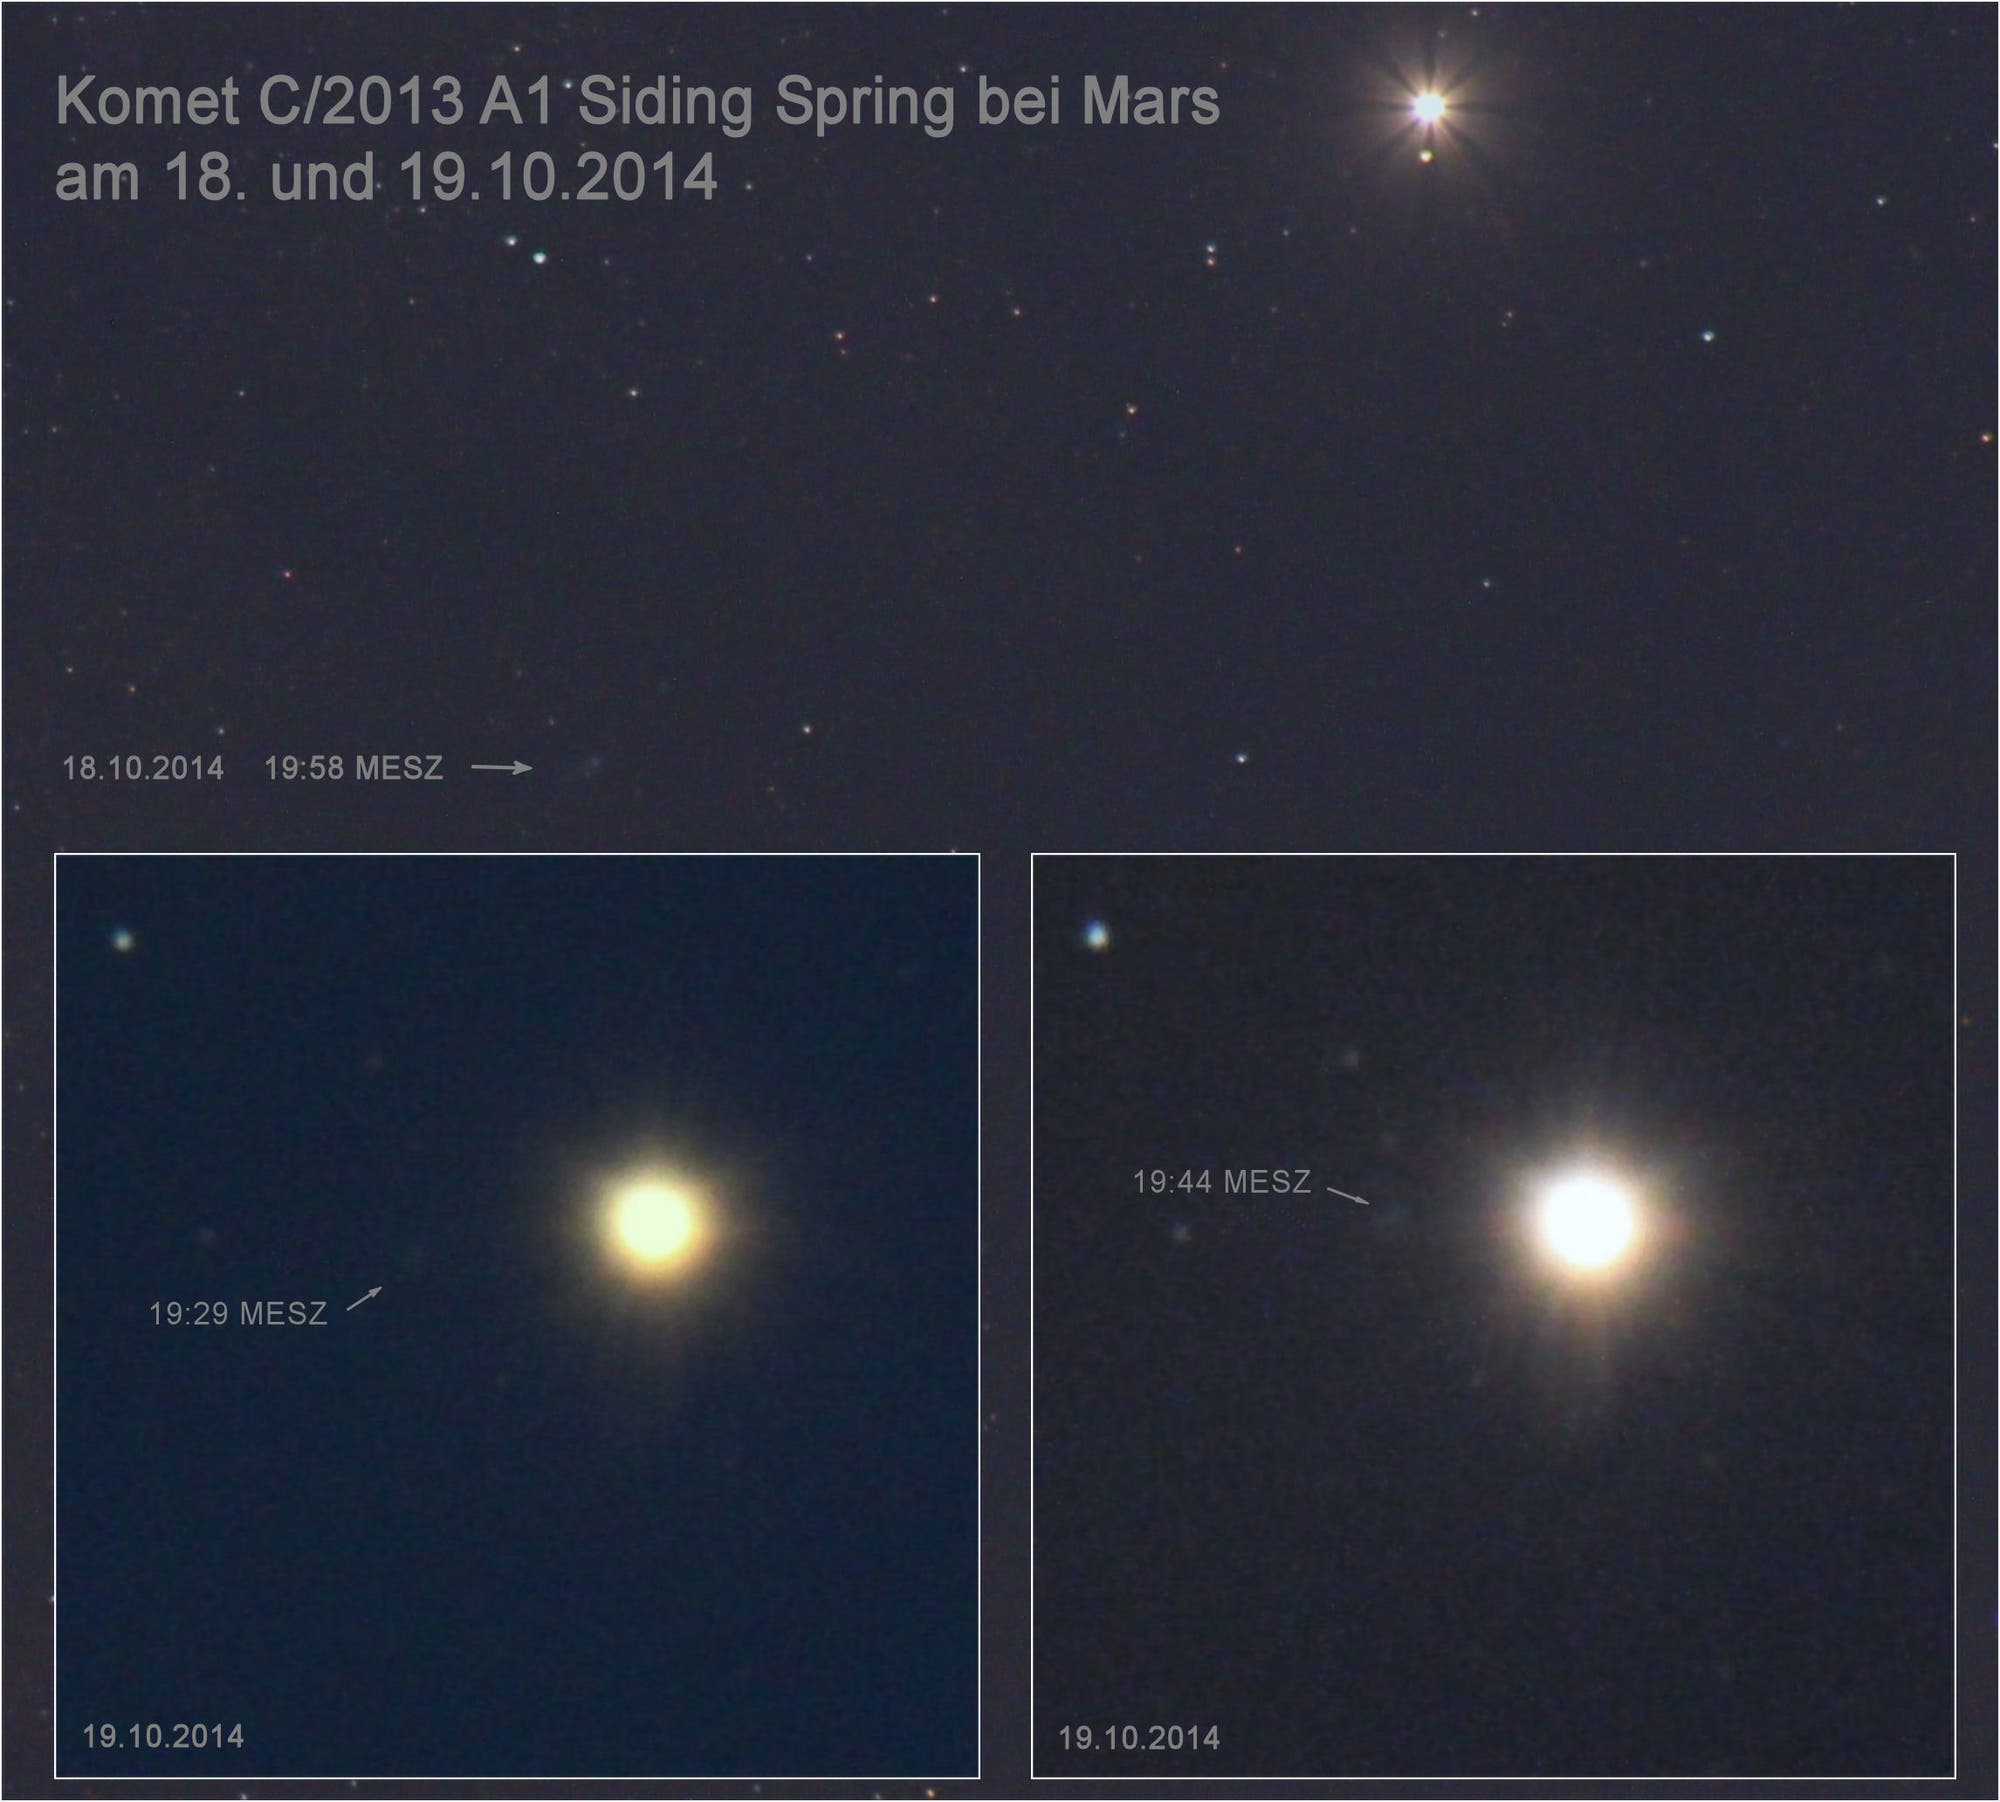 Komet C/2013 A1 Siding Spring beim Mars am 18. und 19.10.2014